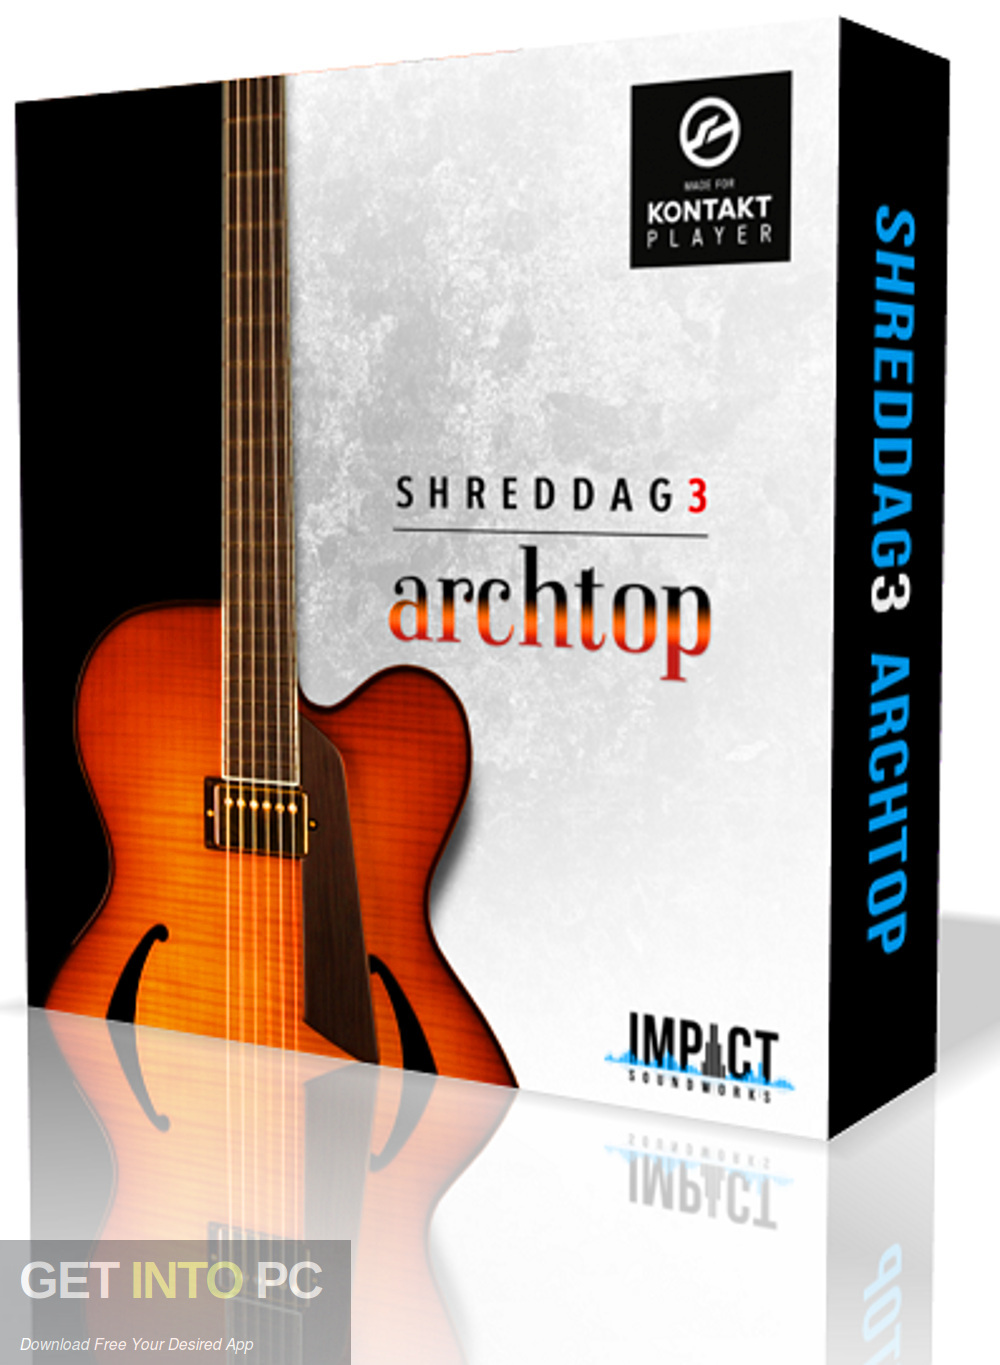 Impact Soundworks - Shreddage 3 Archtop (KONTAKT) Free Download-GetintoPC.com